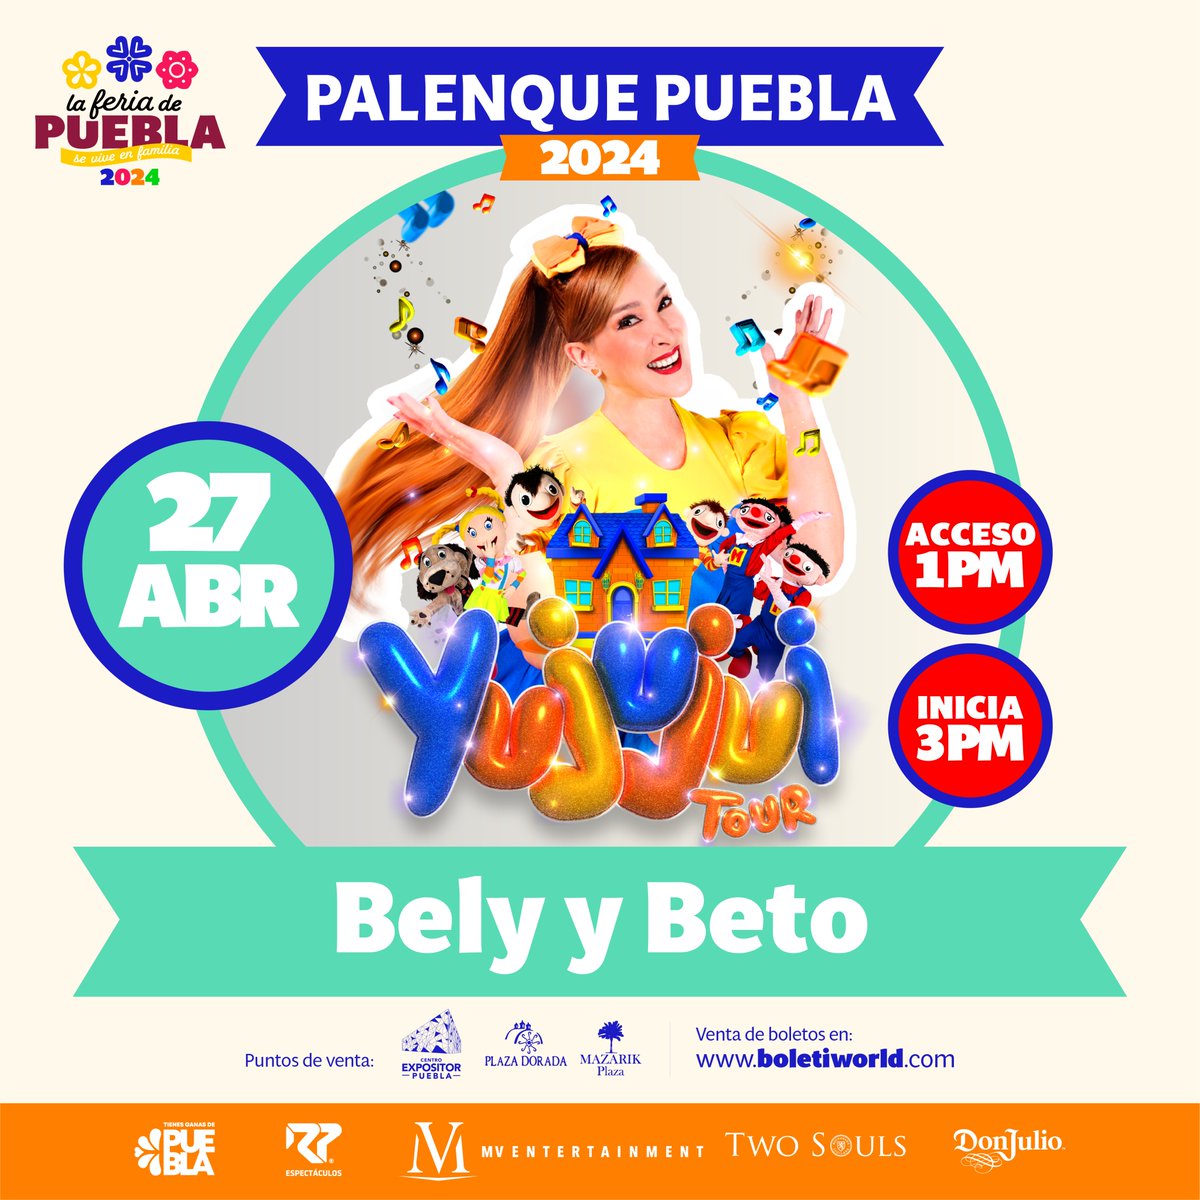 🎈 Este 27 de abril, la diversión está garantizada con Bely y Beto en el Palenque de la #FeriaDePuebla 2024. ¡Una fiesta inolvidable para toda la familia te espera! 🎊 #SeViveEnFamilia